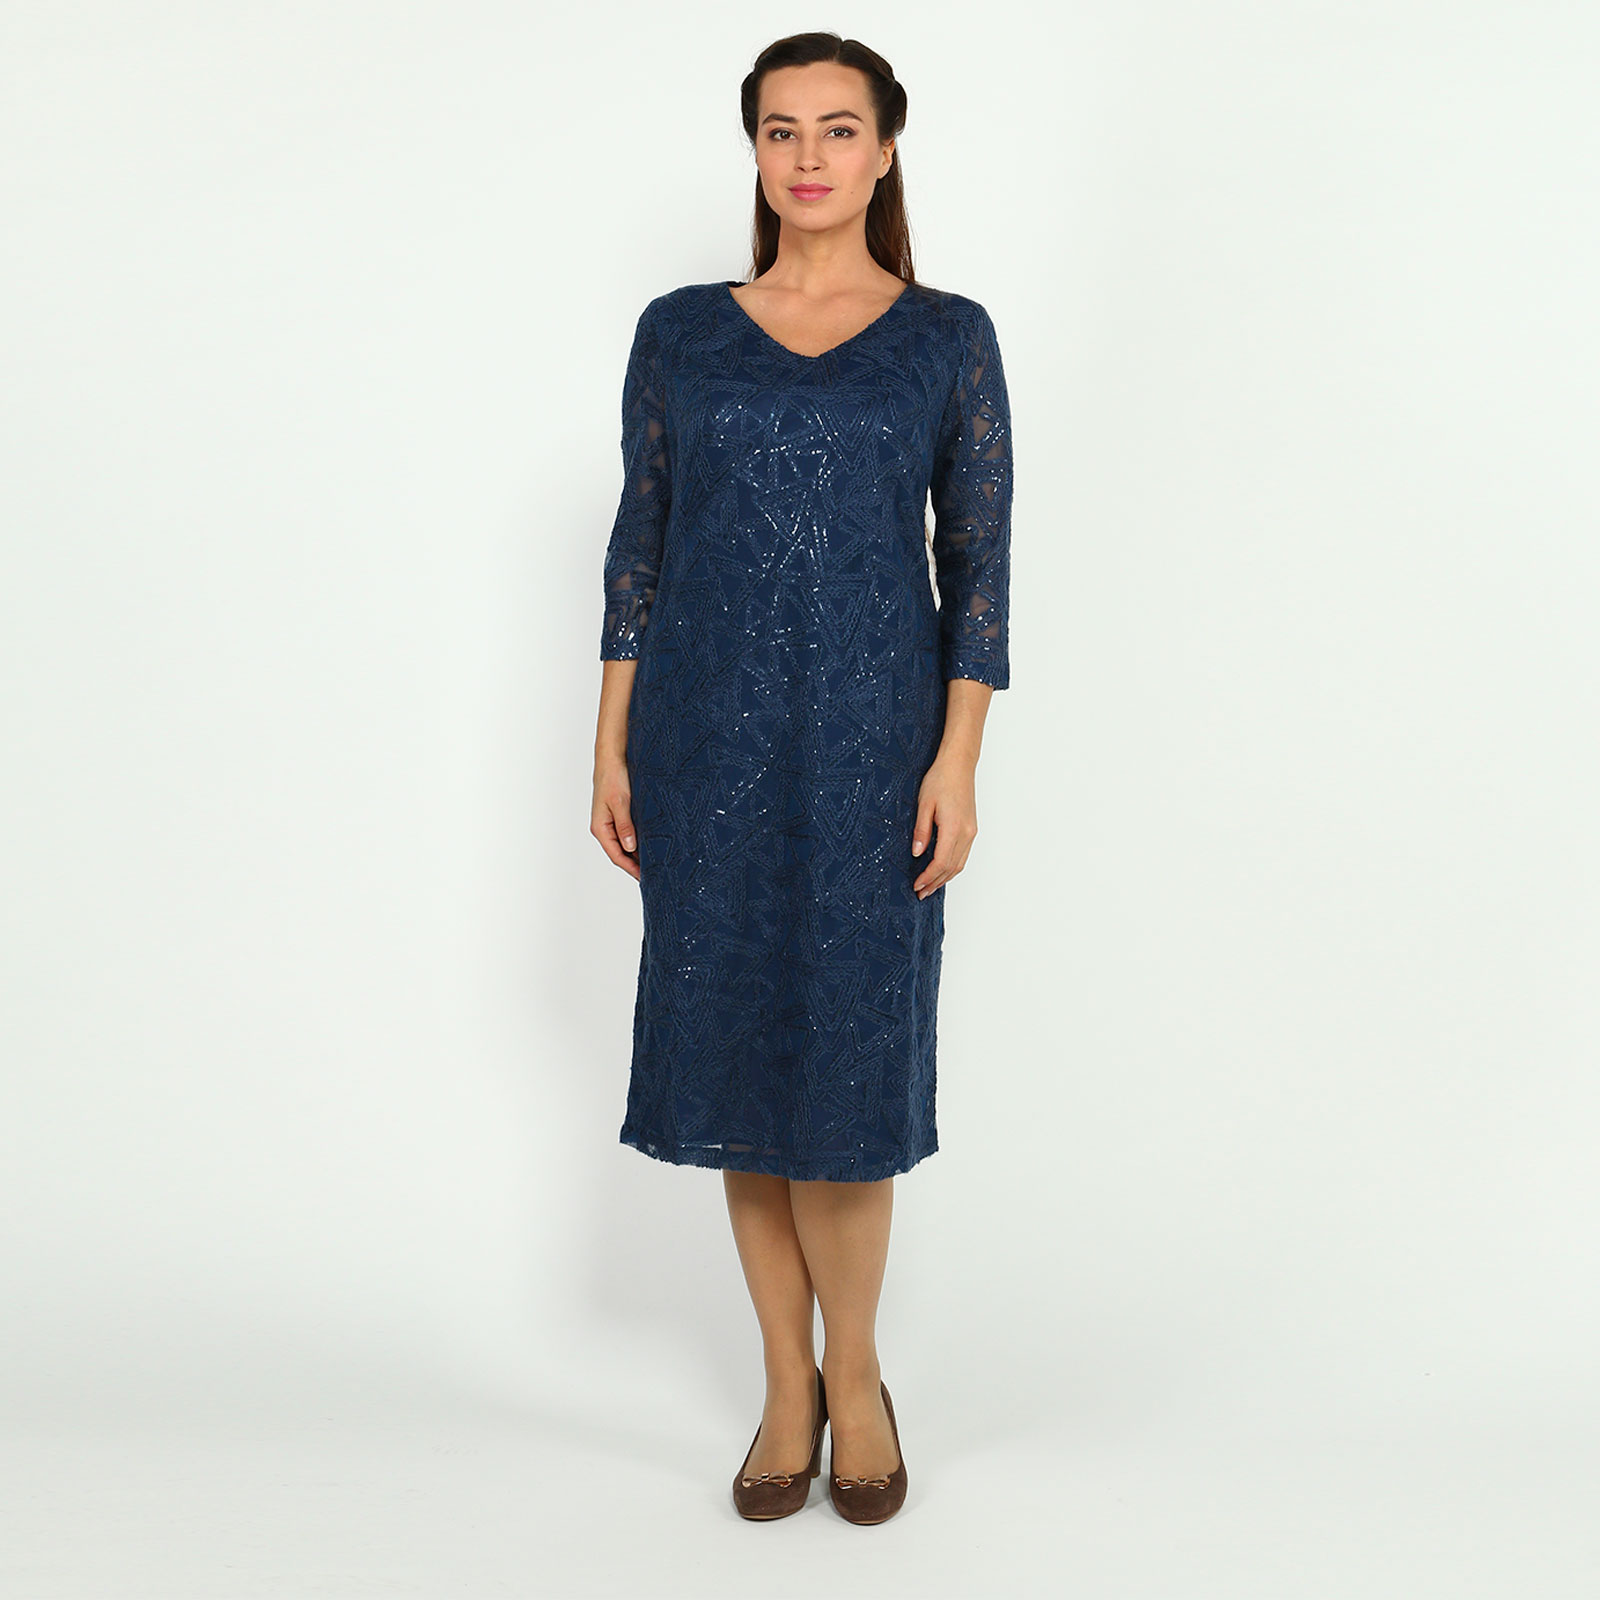 Платье с рисунком из пайеток Elletto Life, размер 62, цвет синий - фото 1